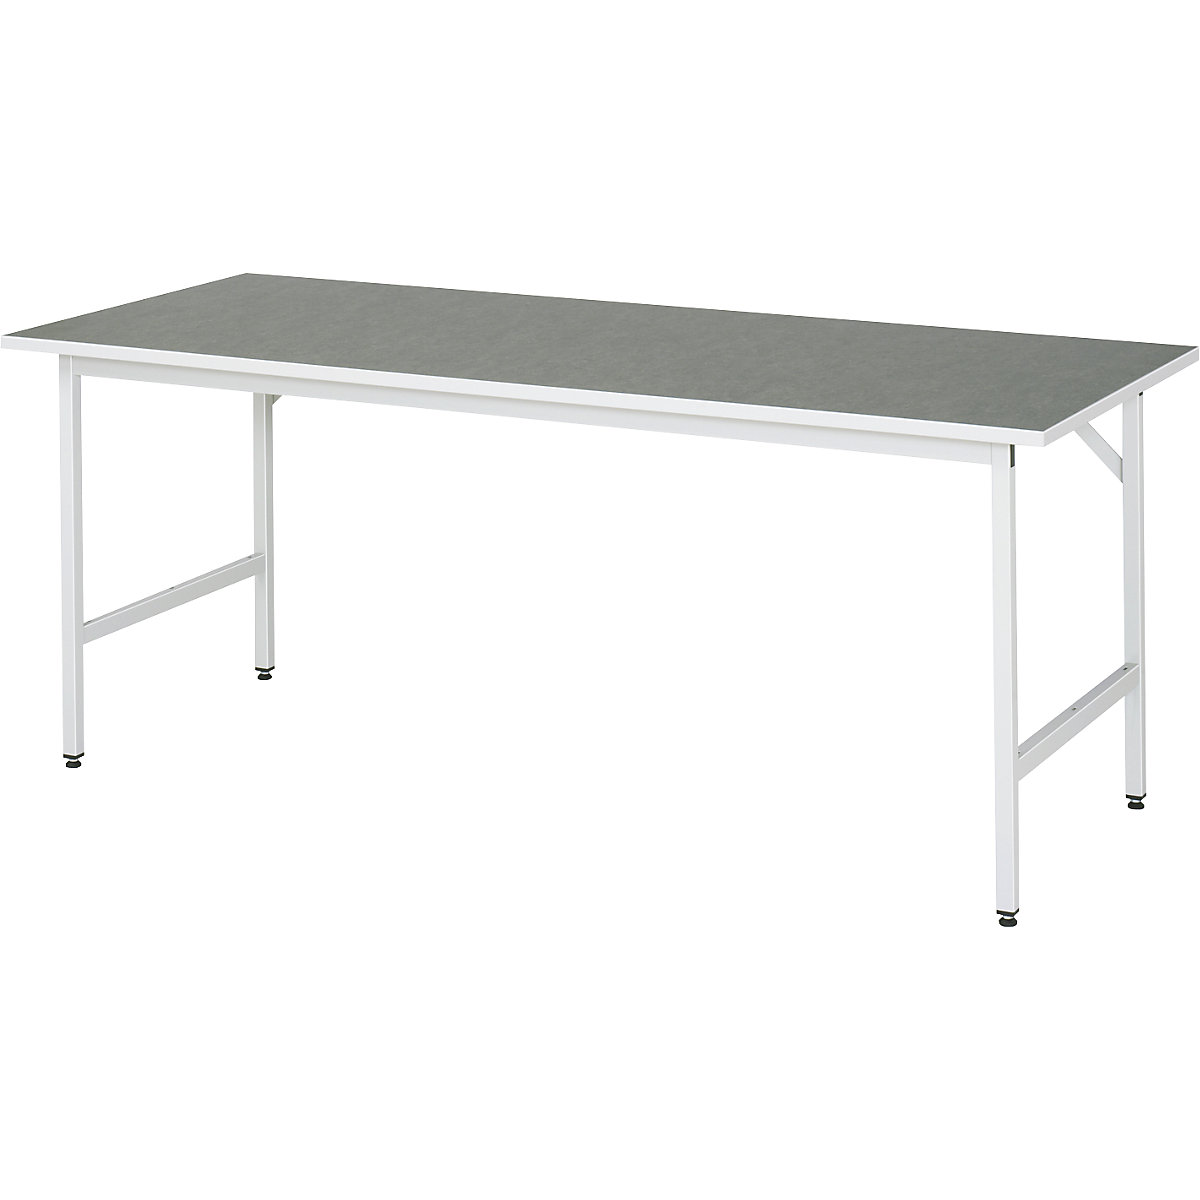 Munkaasztal, állítható magasságú – RAU, 800 – 850 mm, linóleum lap, szé x mé 2000 x 800 mm, világosszürke-12